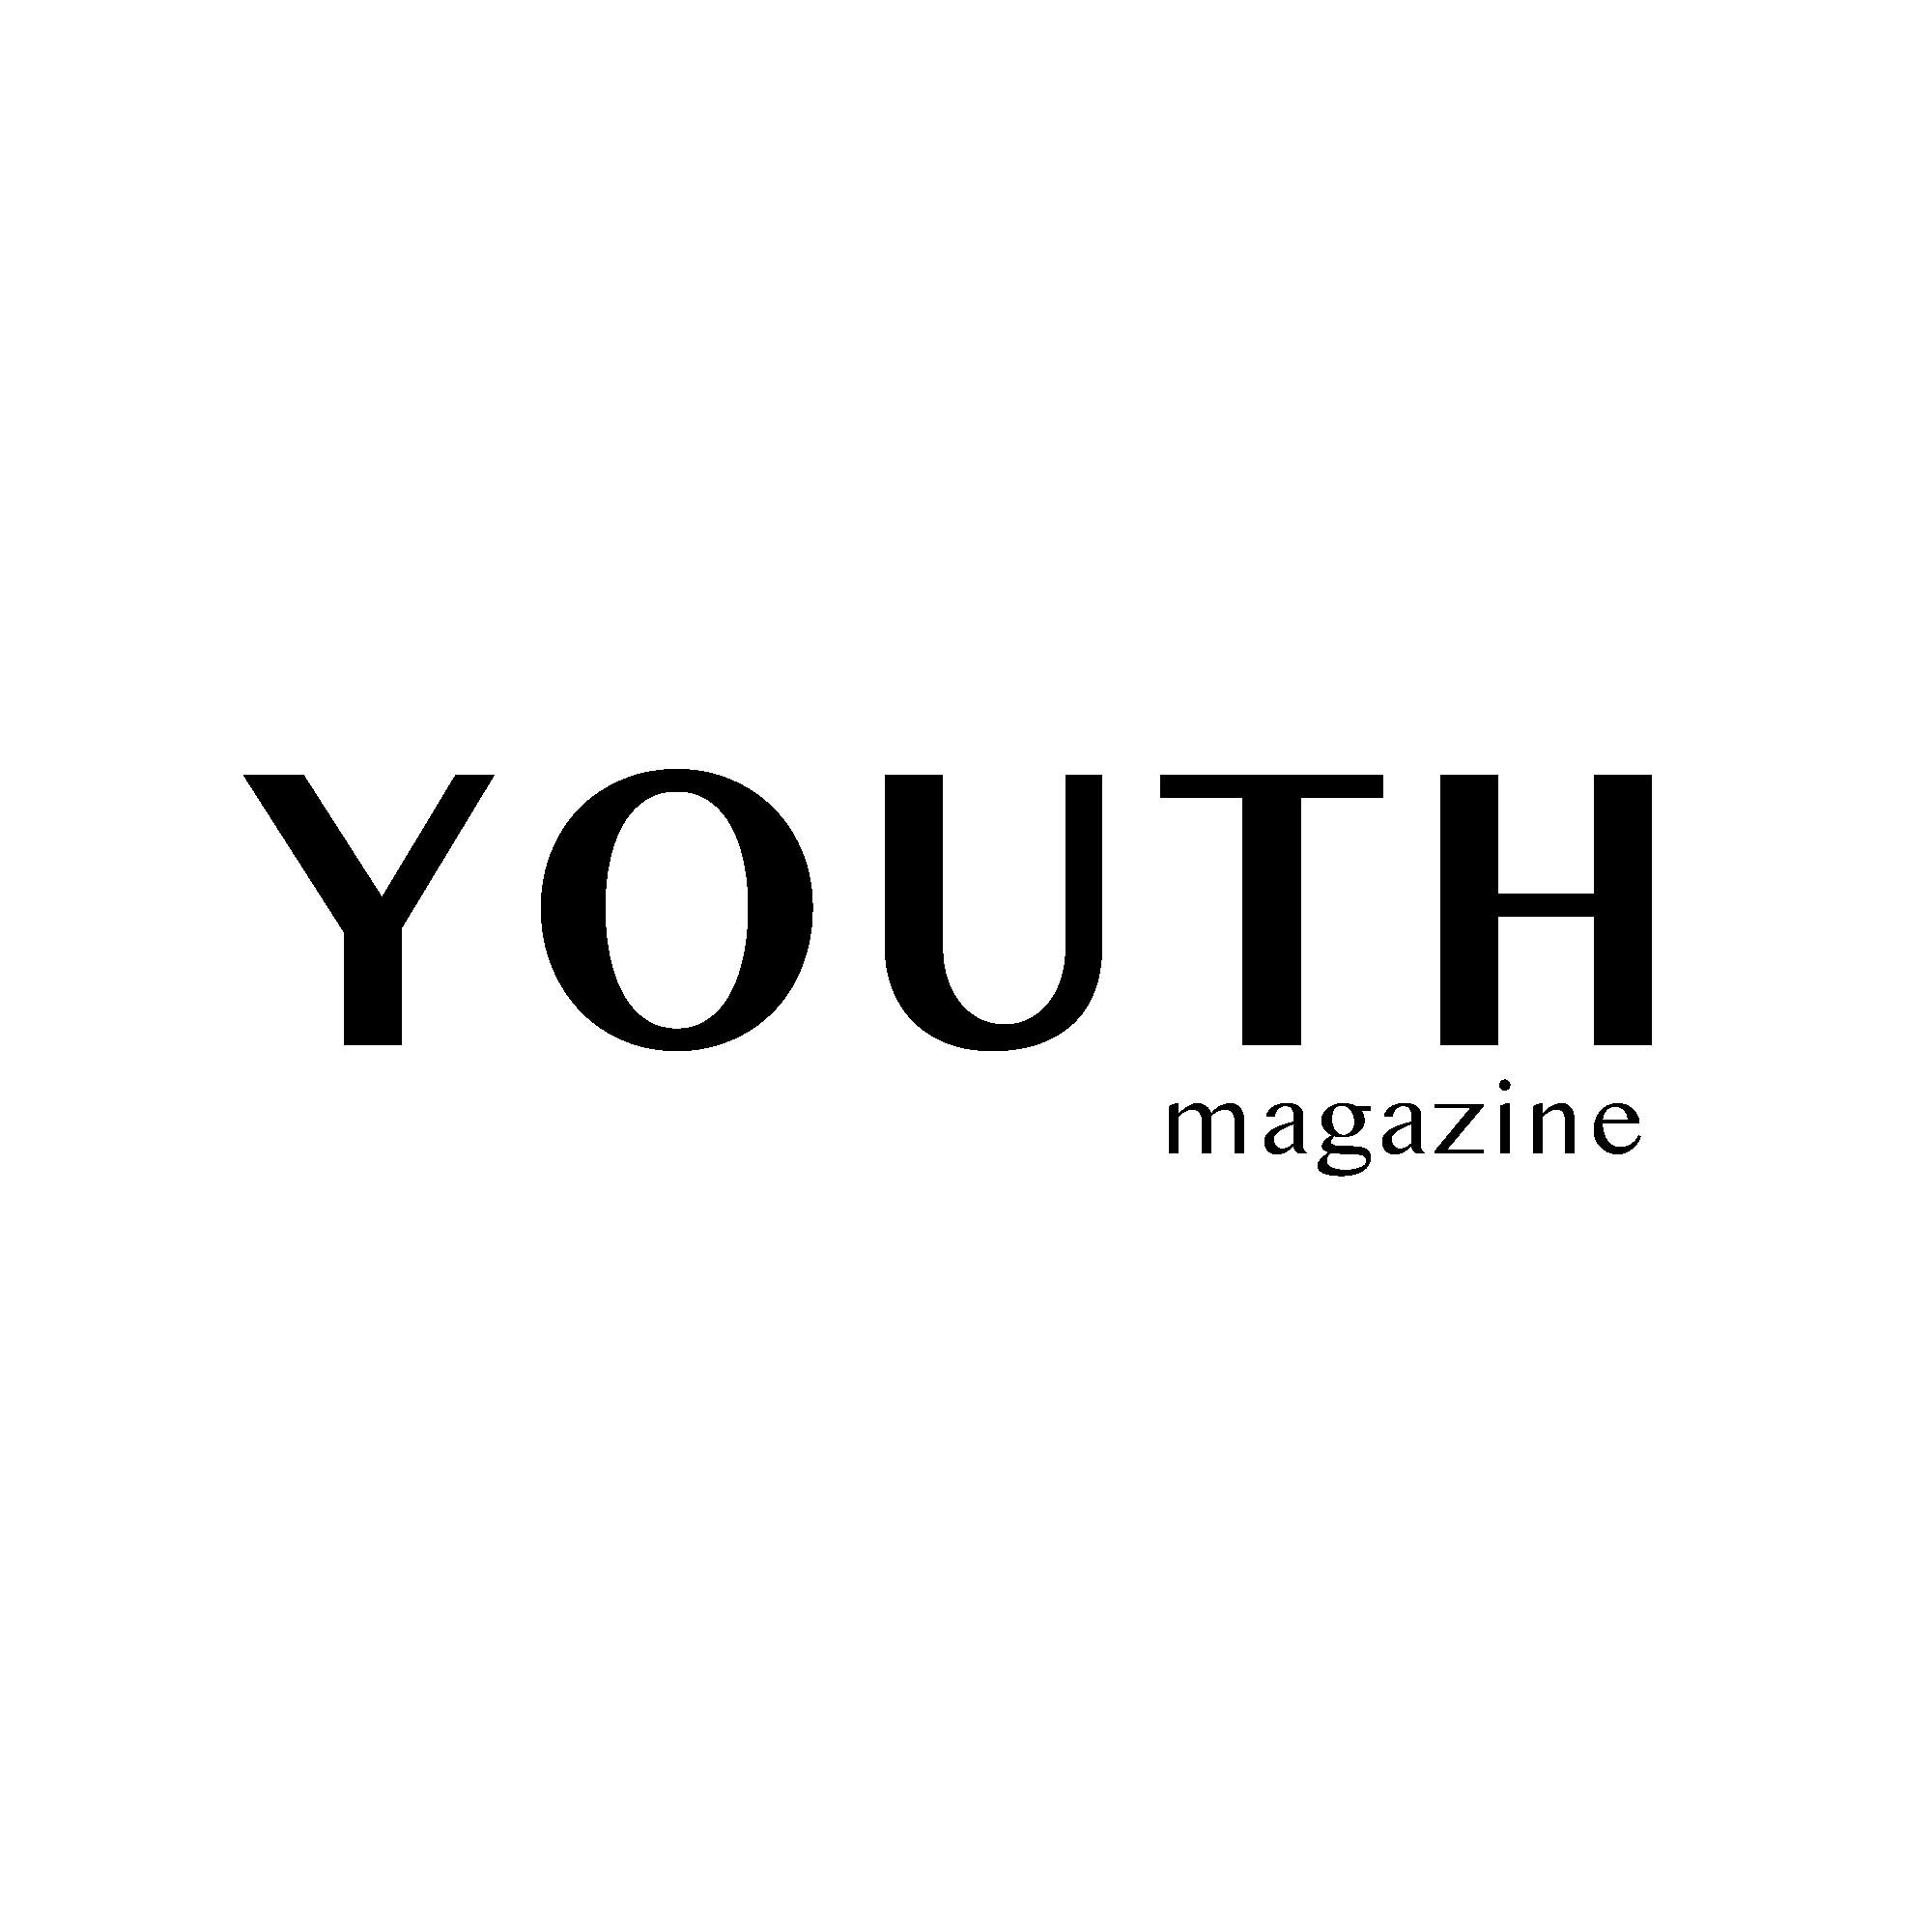 YOUTH magazine 